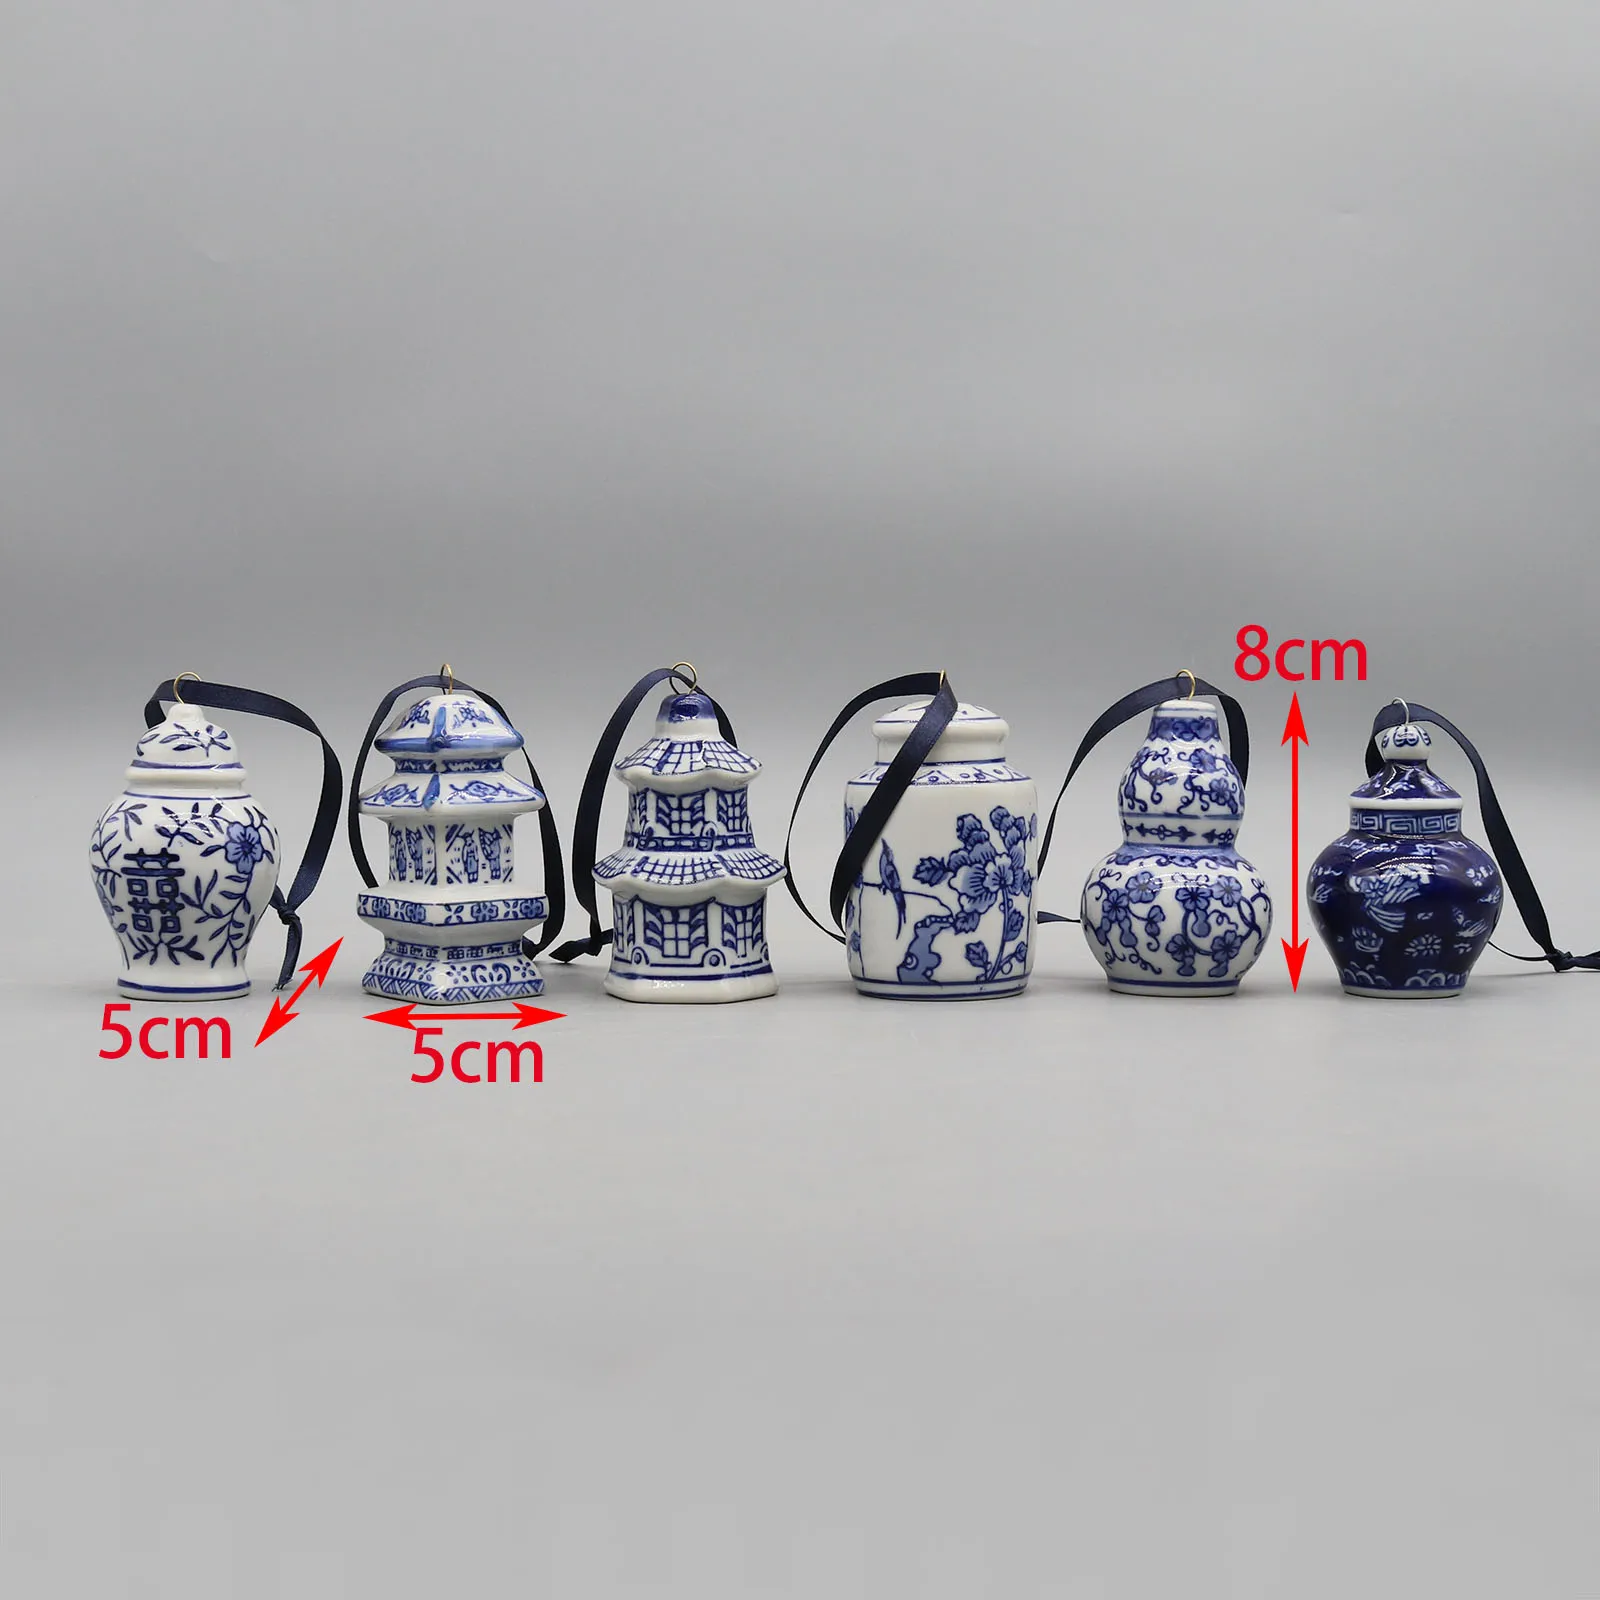 Wiszące ceramiczne, zestaw 6 mini ceramicznych modeli słoików, ozdoby świąteczne